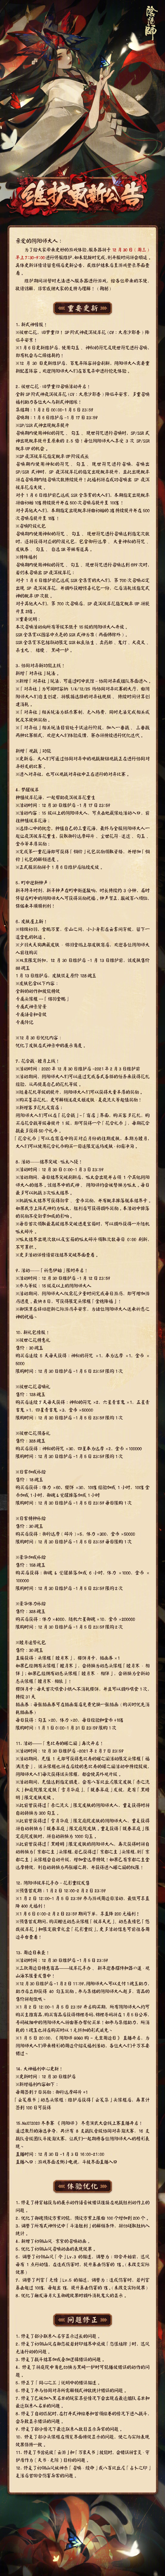 阴阳师12月30日改造公告式样一览